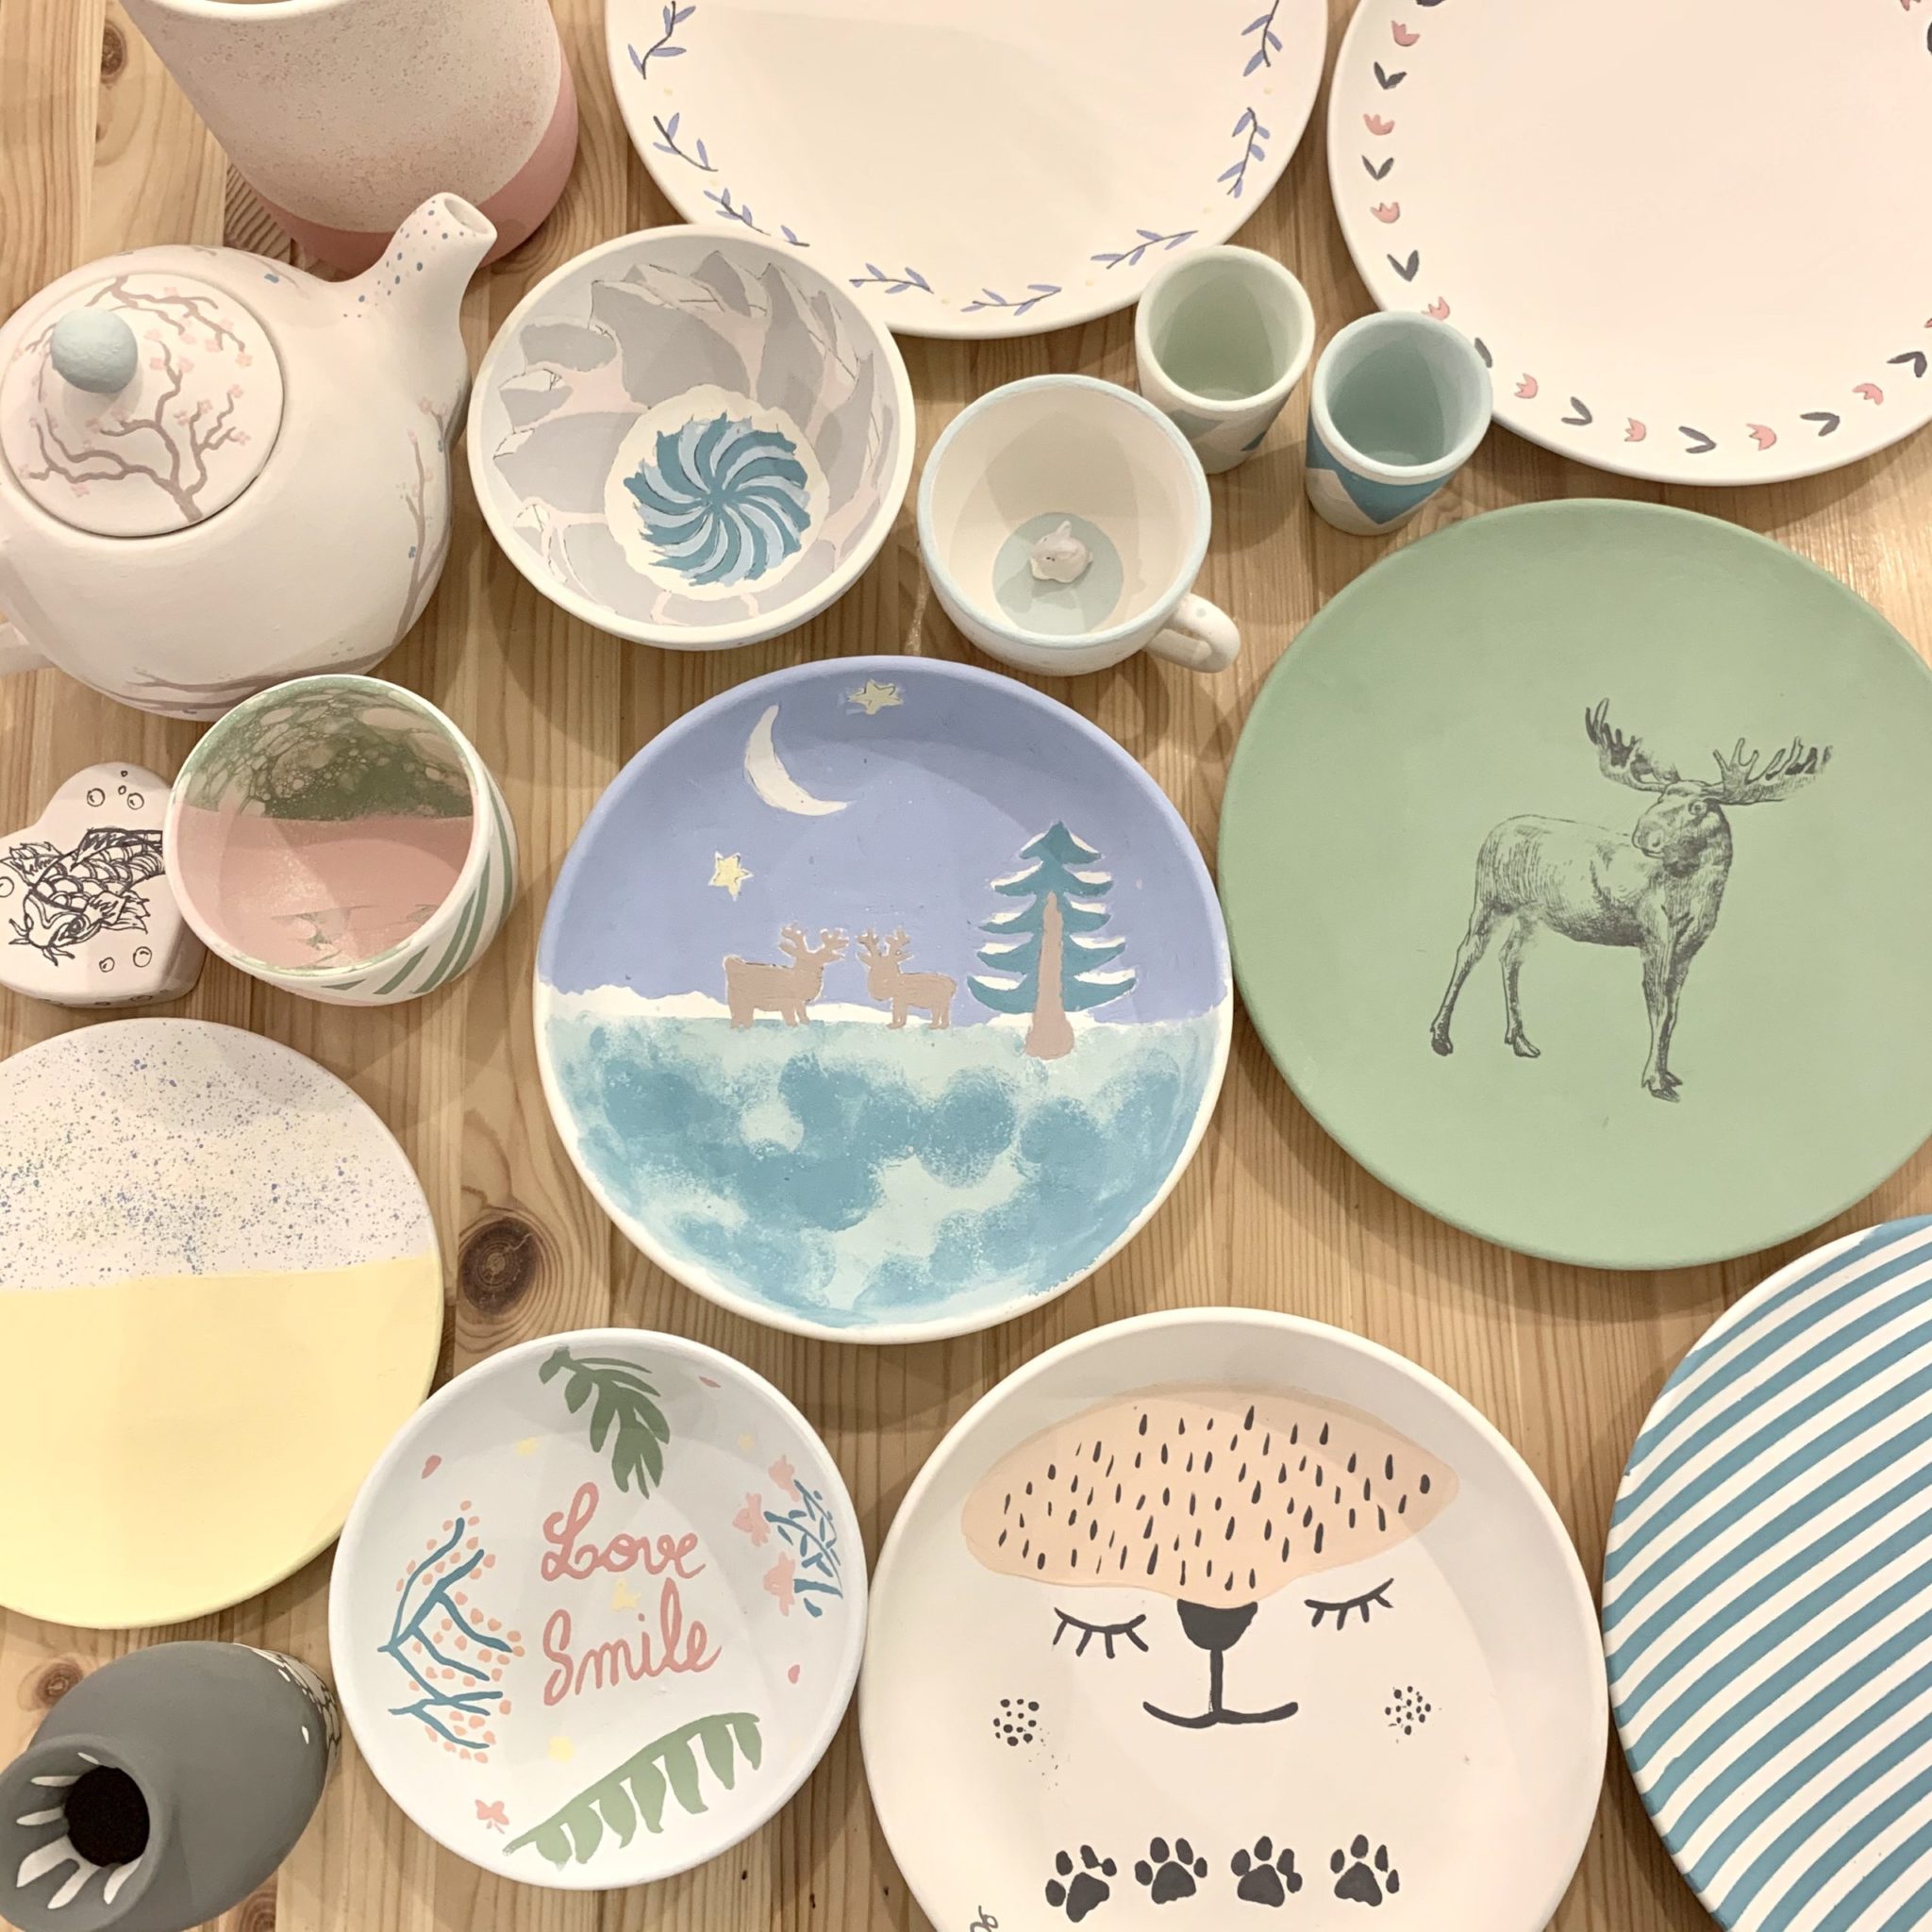 La peinture céramique – Ma jolie ceramique